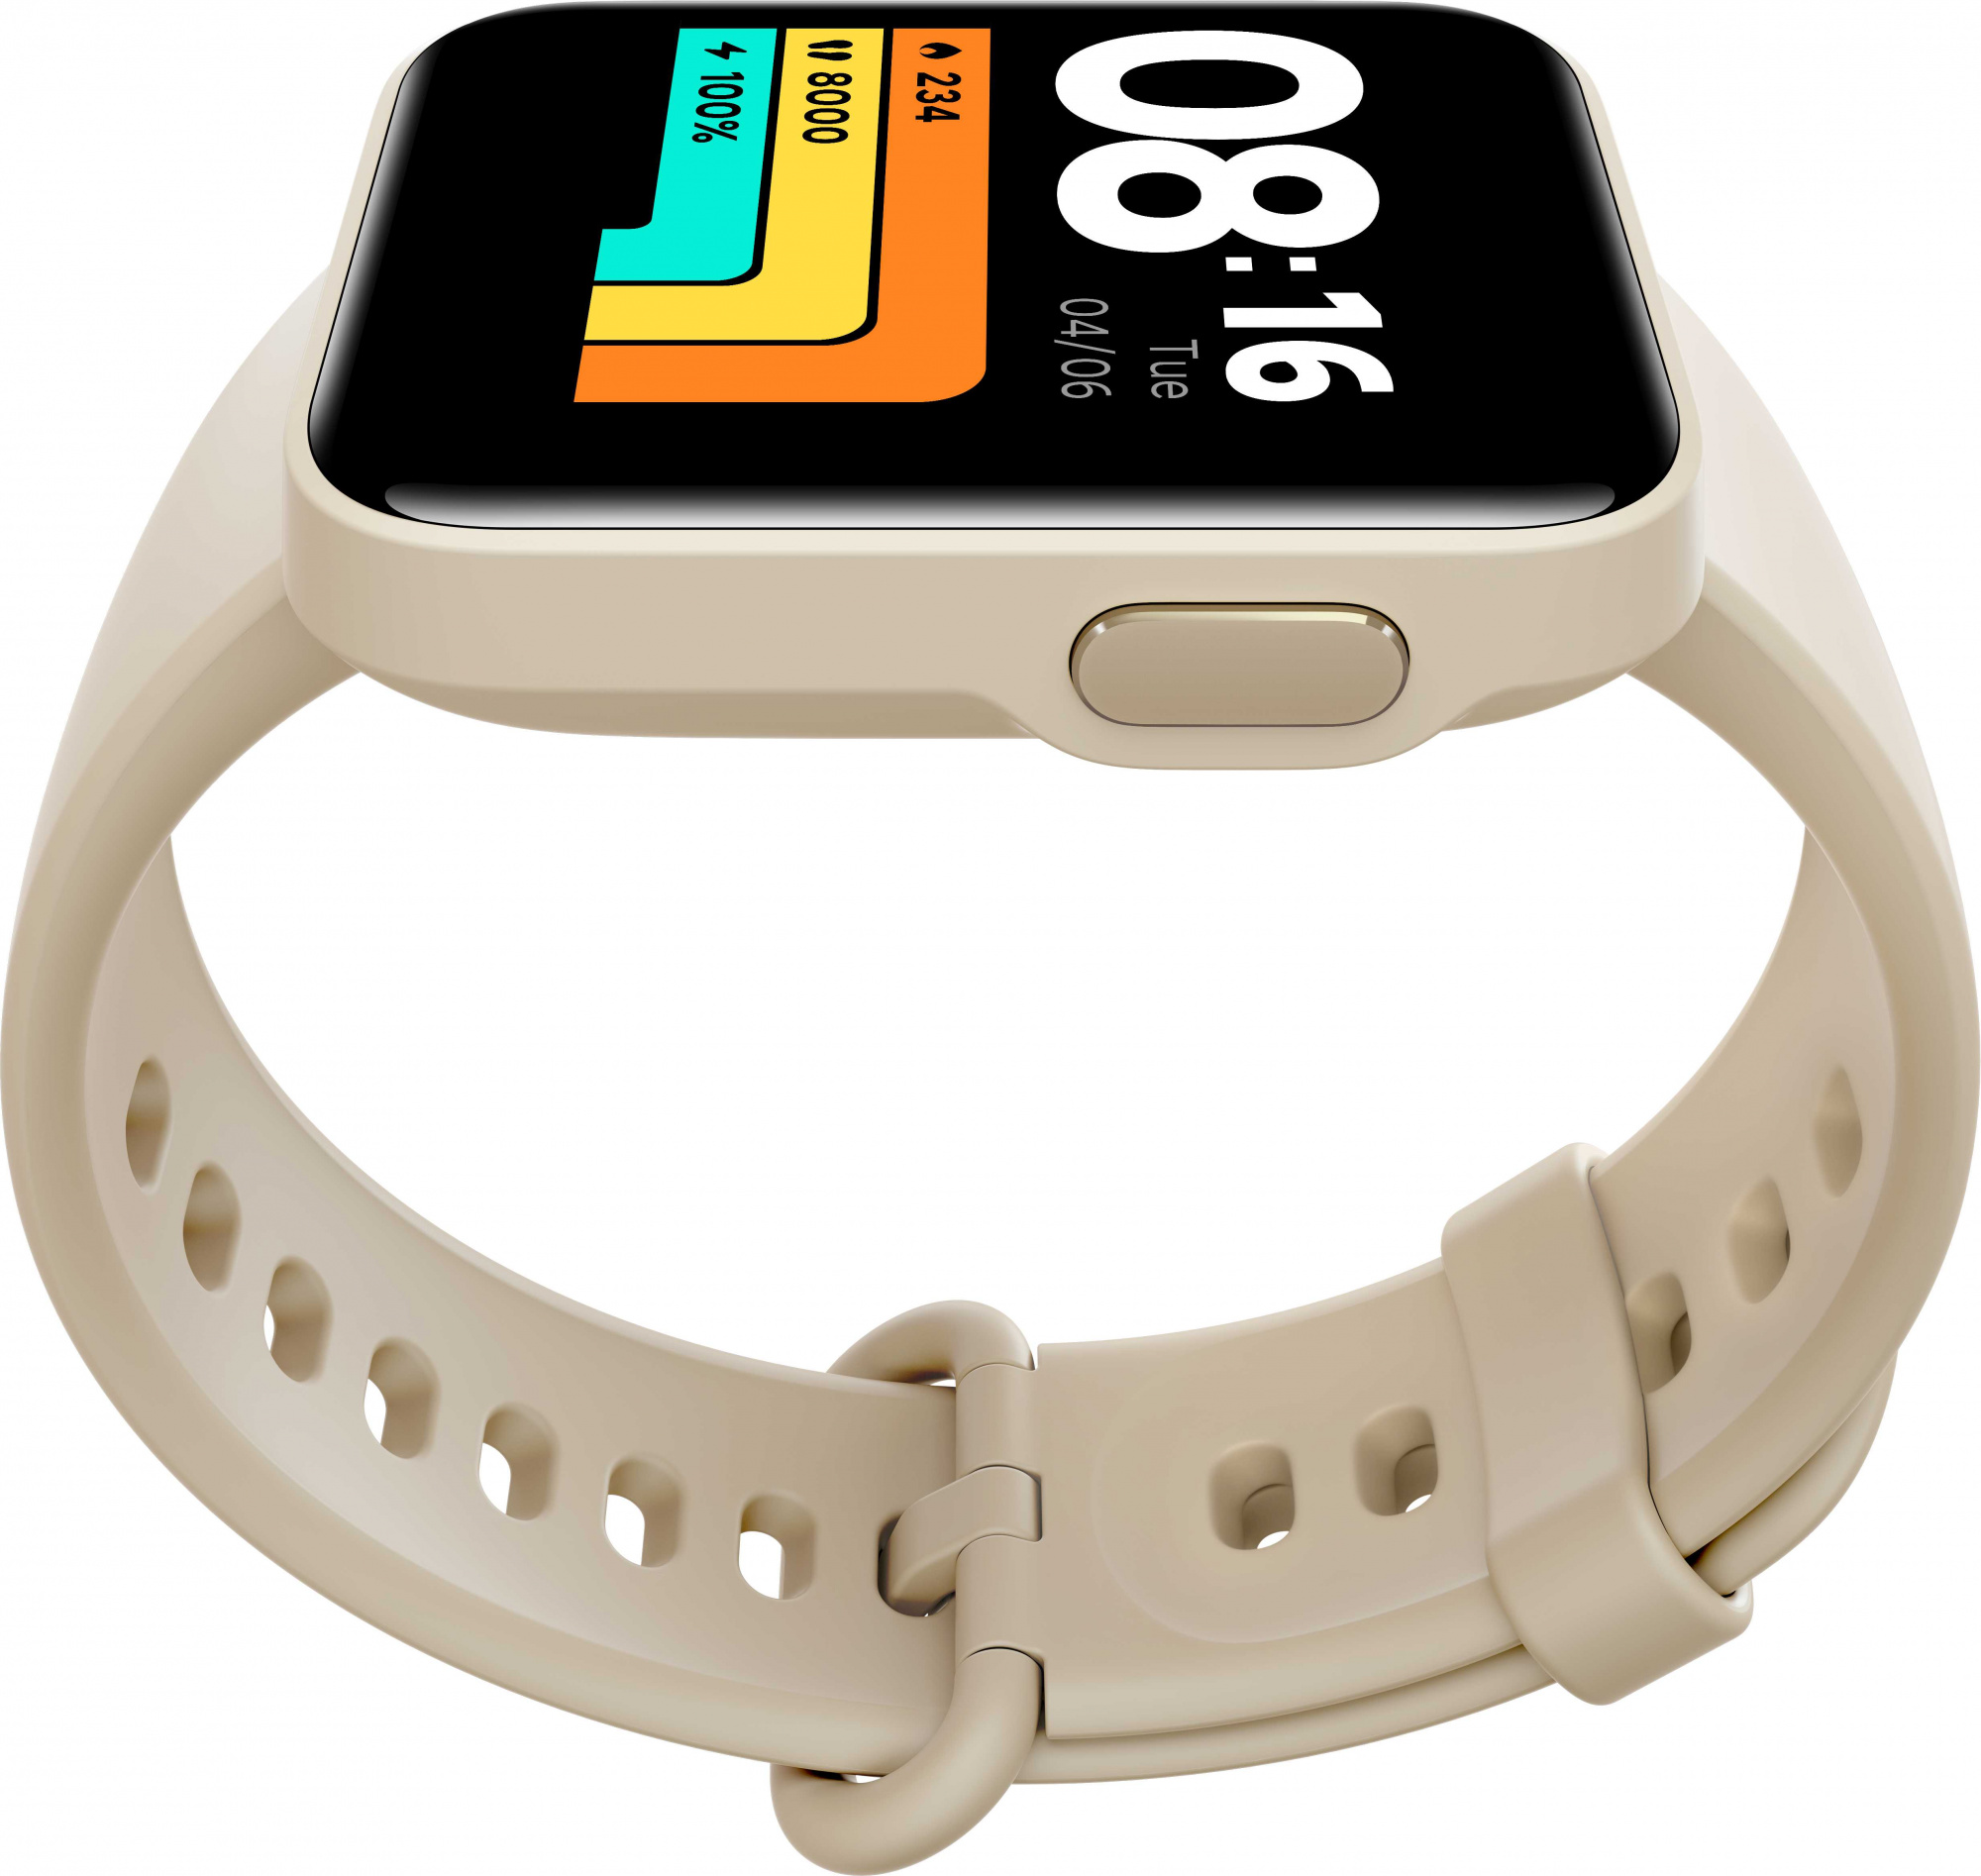 Mi wear. Смарт-часы Xiaomi mi watch Lite. Xiaomi mi часы Lite Bluetooth смарт-часы GPS 5atm. Смарт-часы Xiaomi mi watch Lite redmiwt02. Смарт-часы Xiaomi mi watch Lite Beige (bhr4706ru).